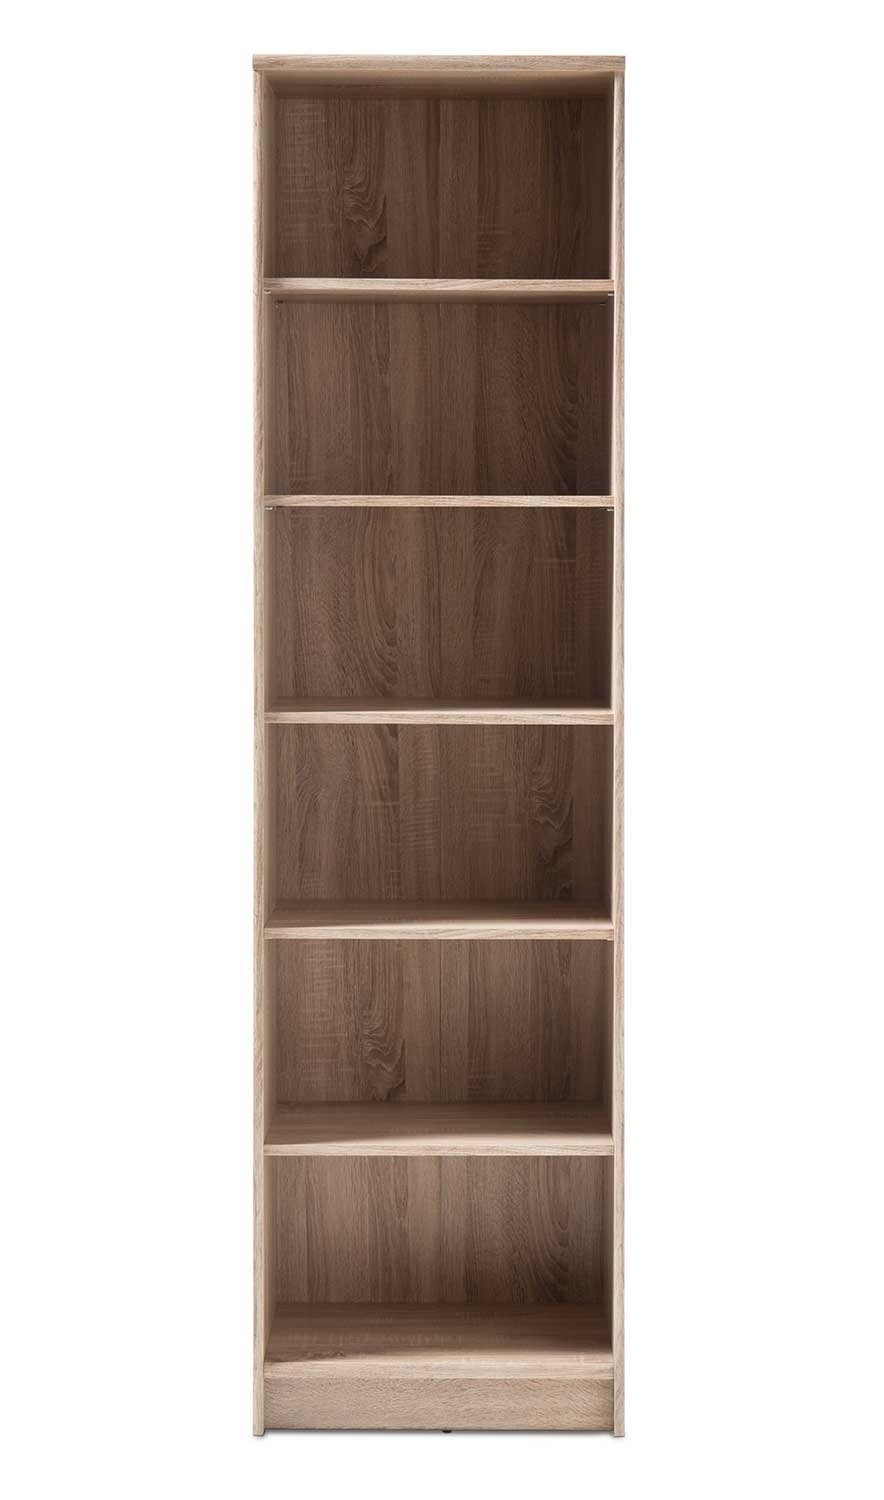 Bücherregal OPTIMUS, Eiche Sonoma Dekor, 6 Fächer, 4 höhenverstellbare Einlegeböden, B 54 x H 198 x T 34 cm